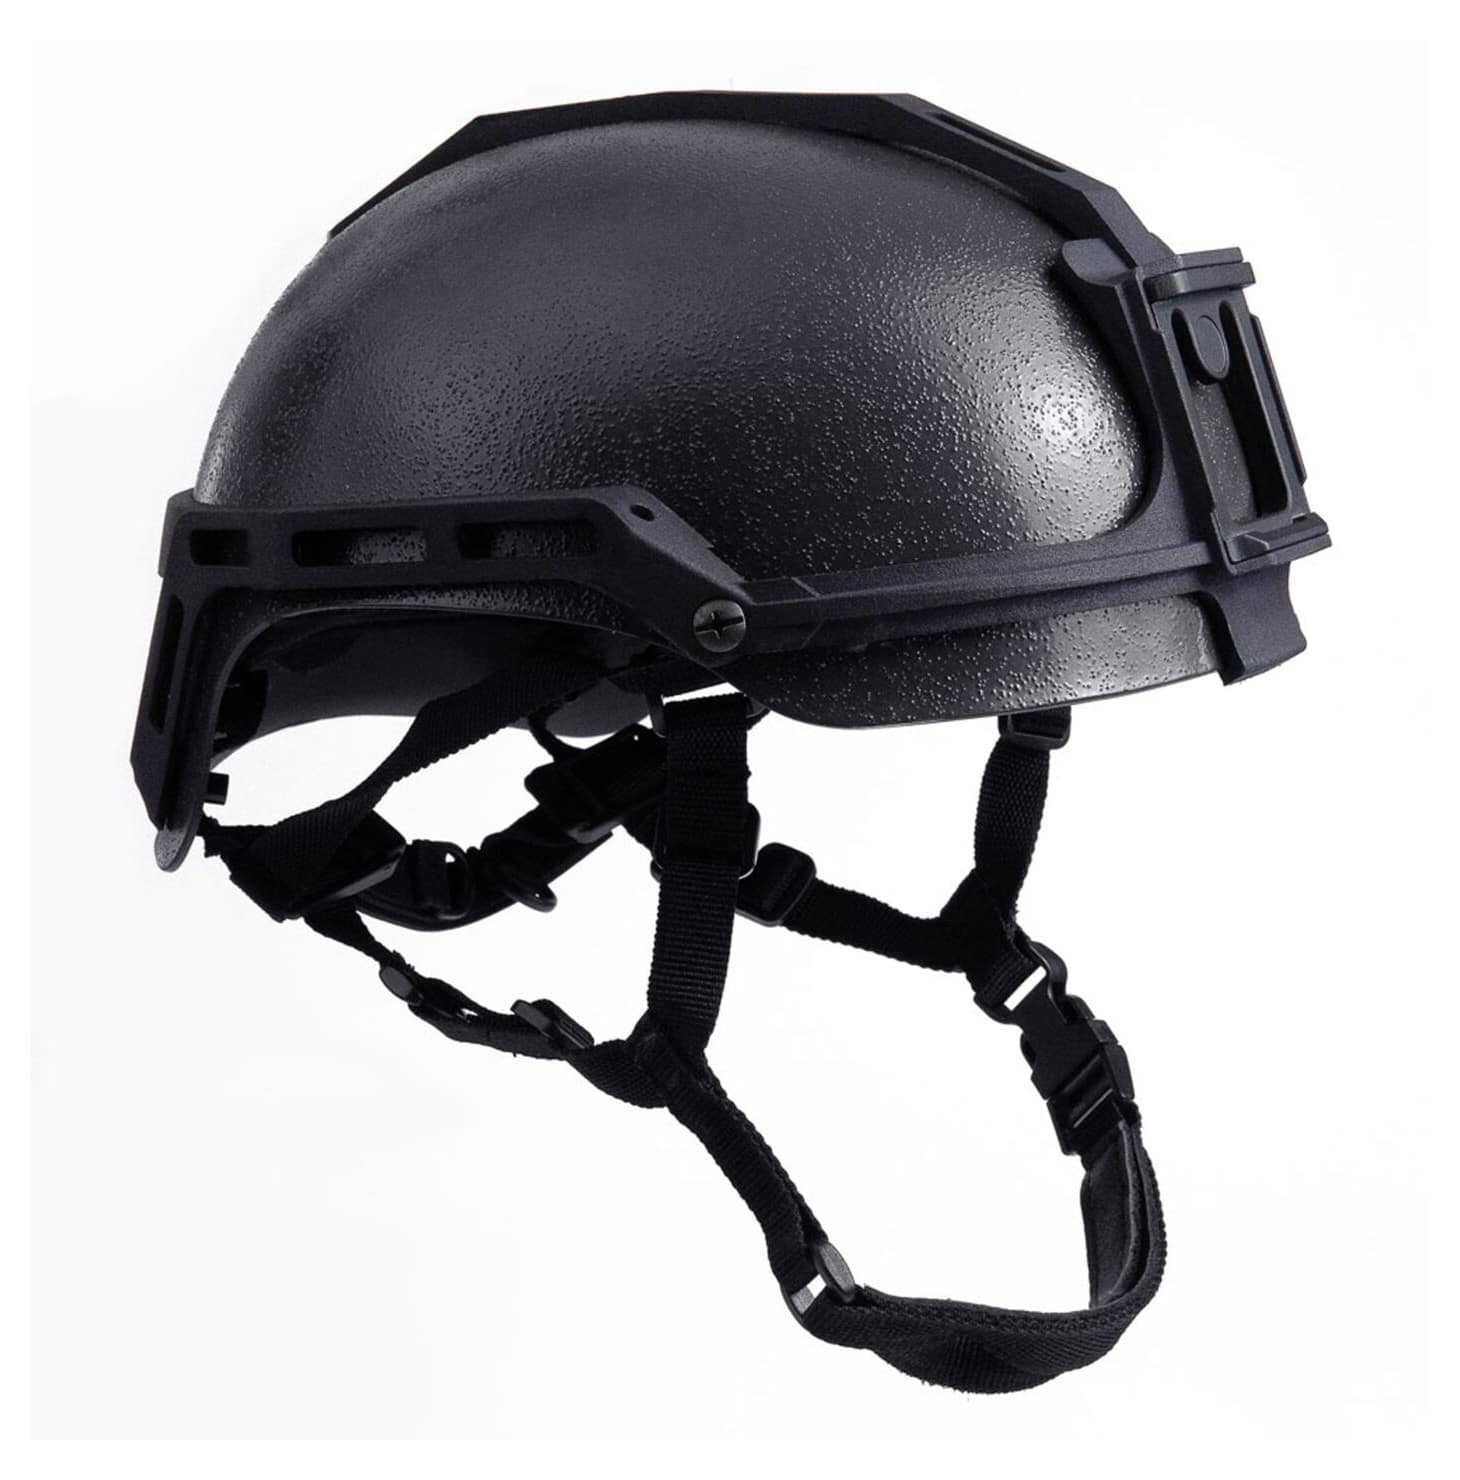 Adept Armor NovaSteel helmet